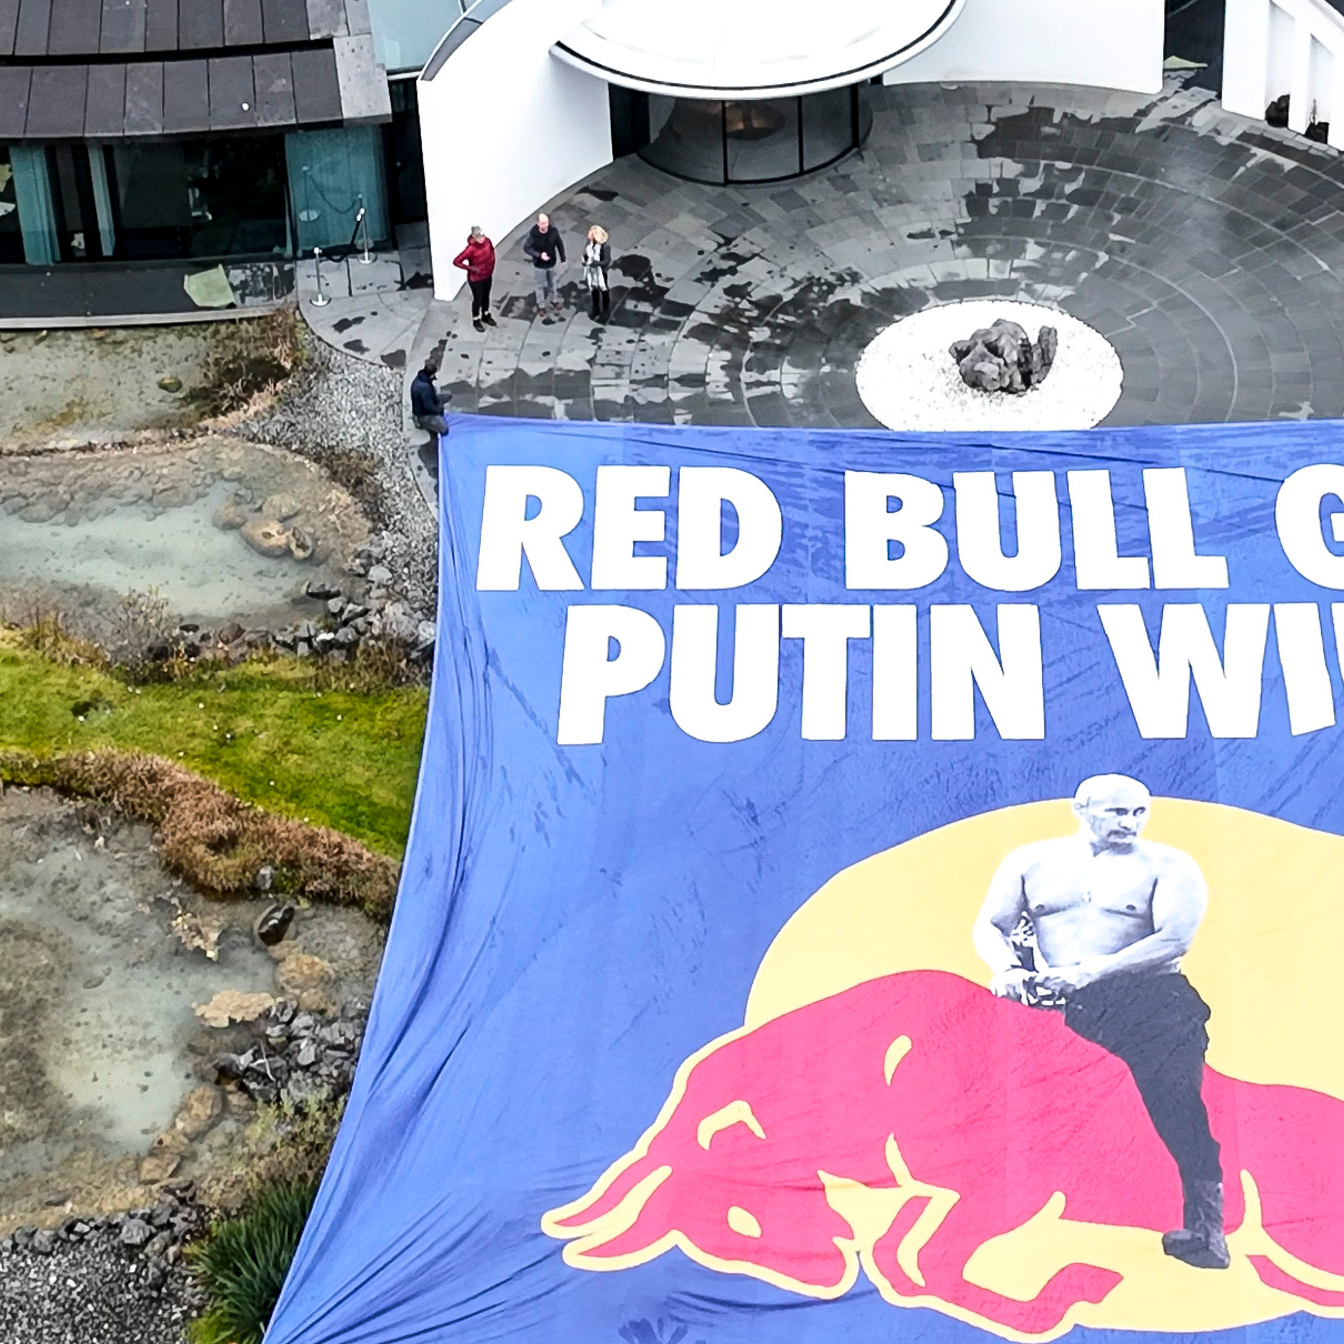 "Red Bull gives Putin Wings" steht auf einem großen Transparent, das Aktivisten vor dem Hauptquartier von Red Bull aufgebreitet haben